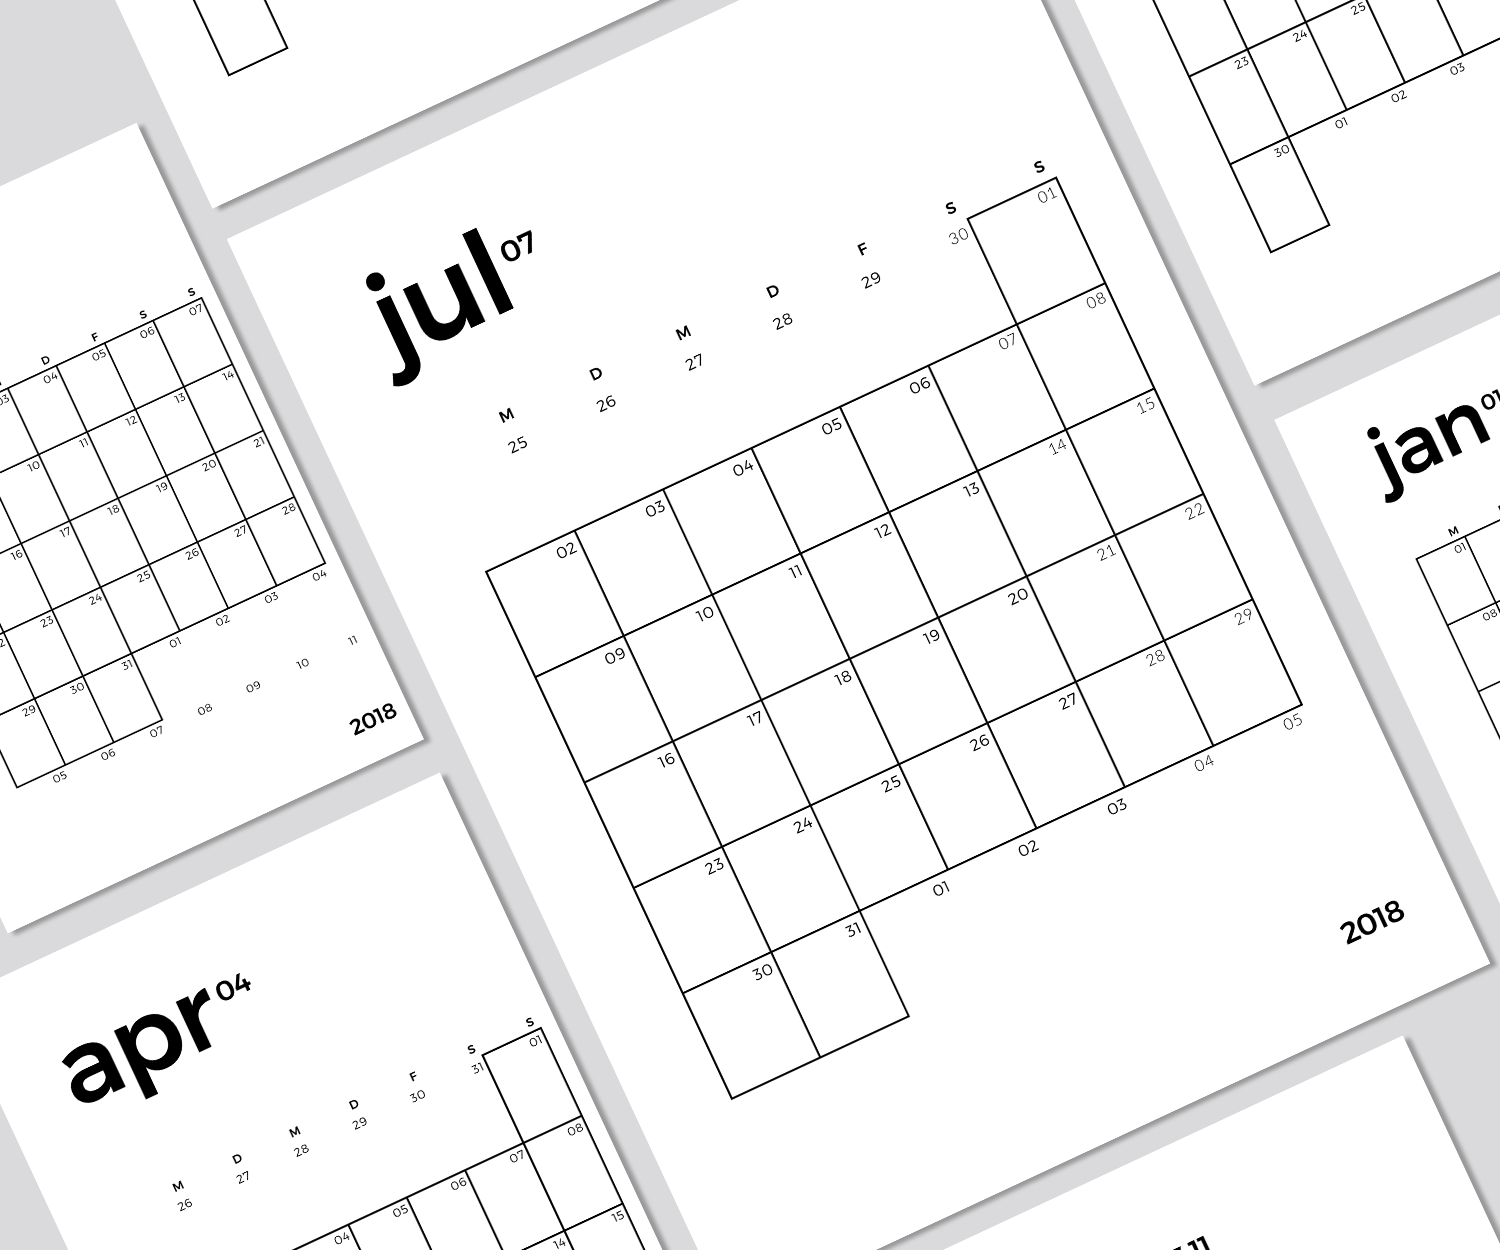 Druckvorlage Monatsplaner Bam 1m 1s Knopfkatz Diy Blog Kalender Klimbim Shop Kalender Zum Ausdrucken Filofax Kalender Kalender Vorlagen